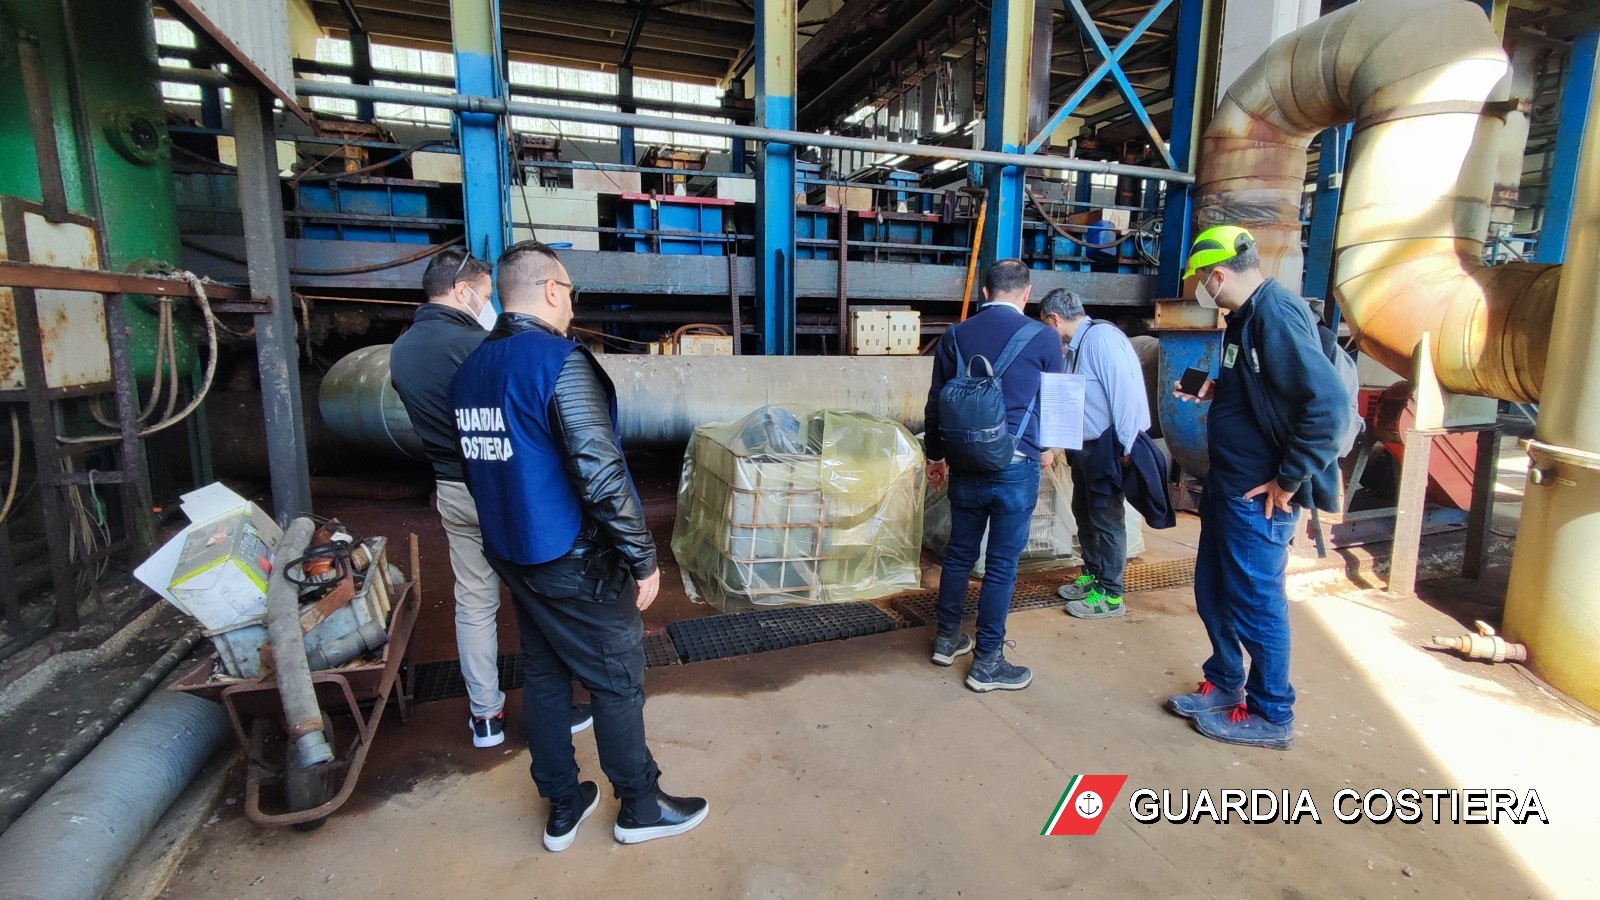 La Guardia Costiera di Pozzuoli sequestra impianto di finiture metalliche per criticità ambientali